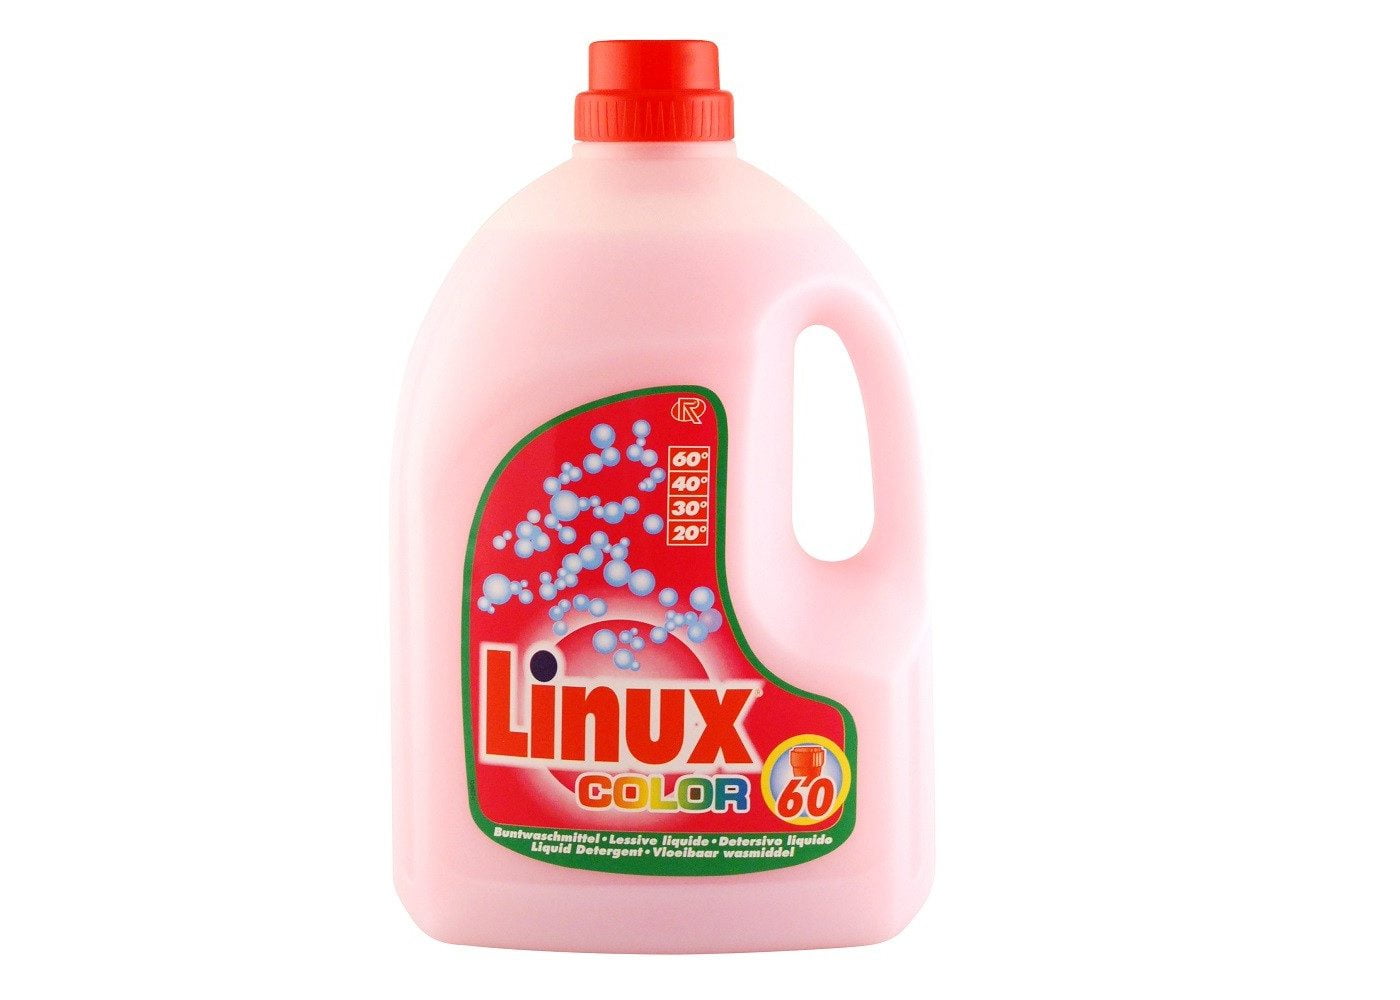 linux-detergent-1-100678589-orig